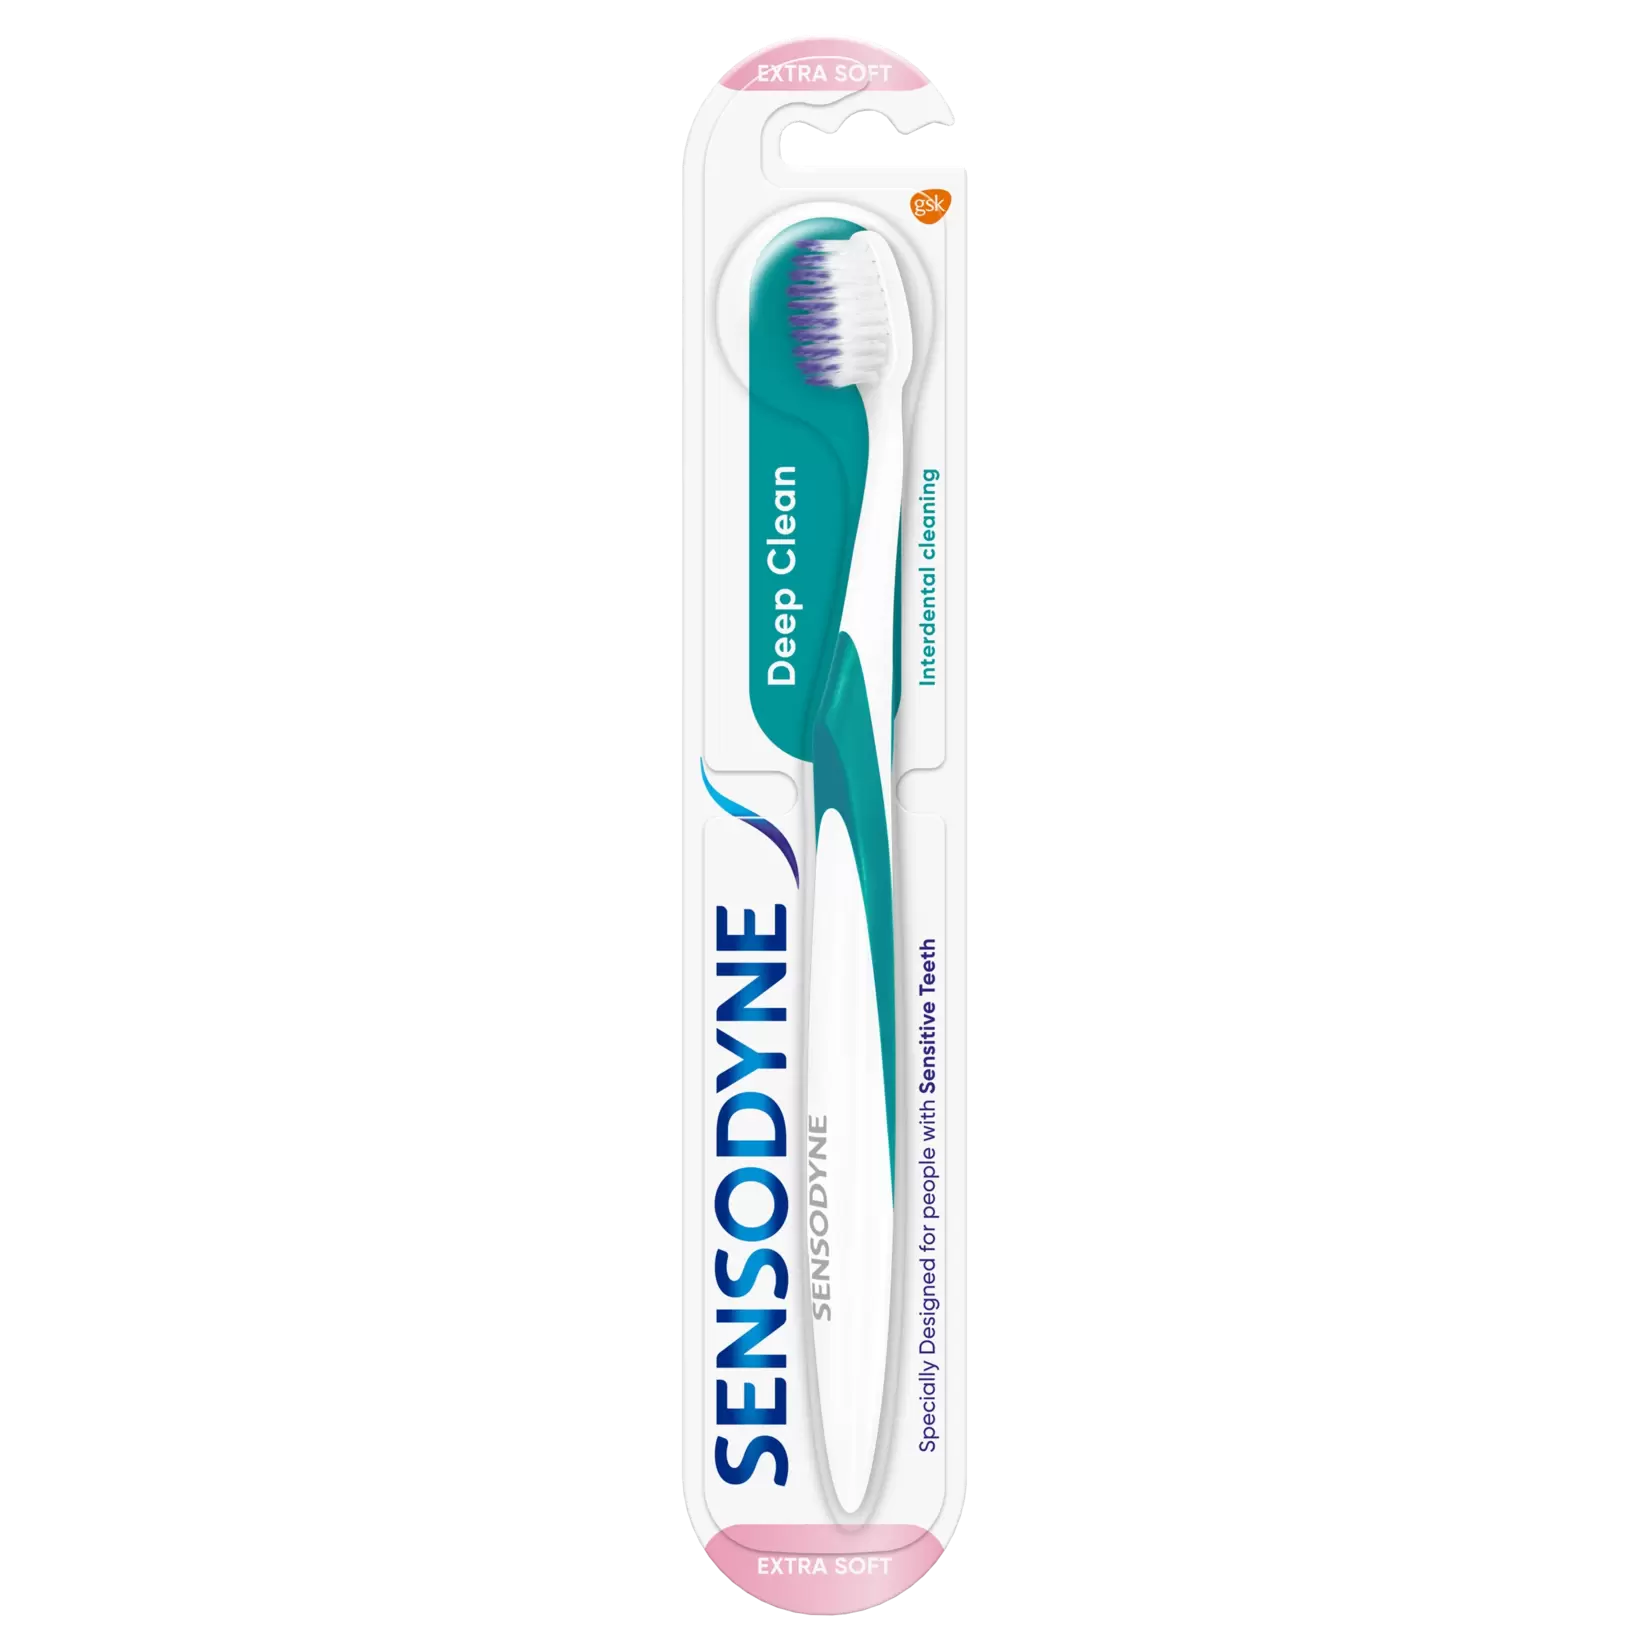 Sensodyne Deep Clean tandborste Extra soft 1st för 20,3 kr på Apotek Hjärtat